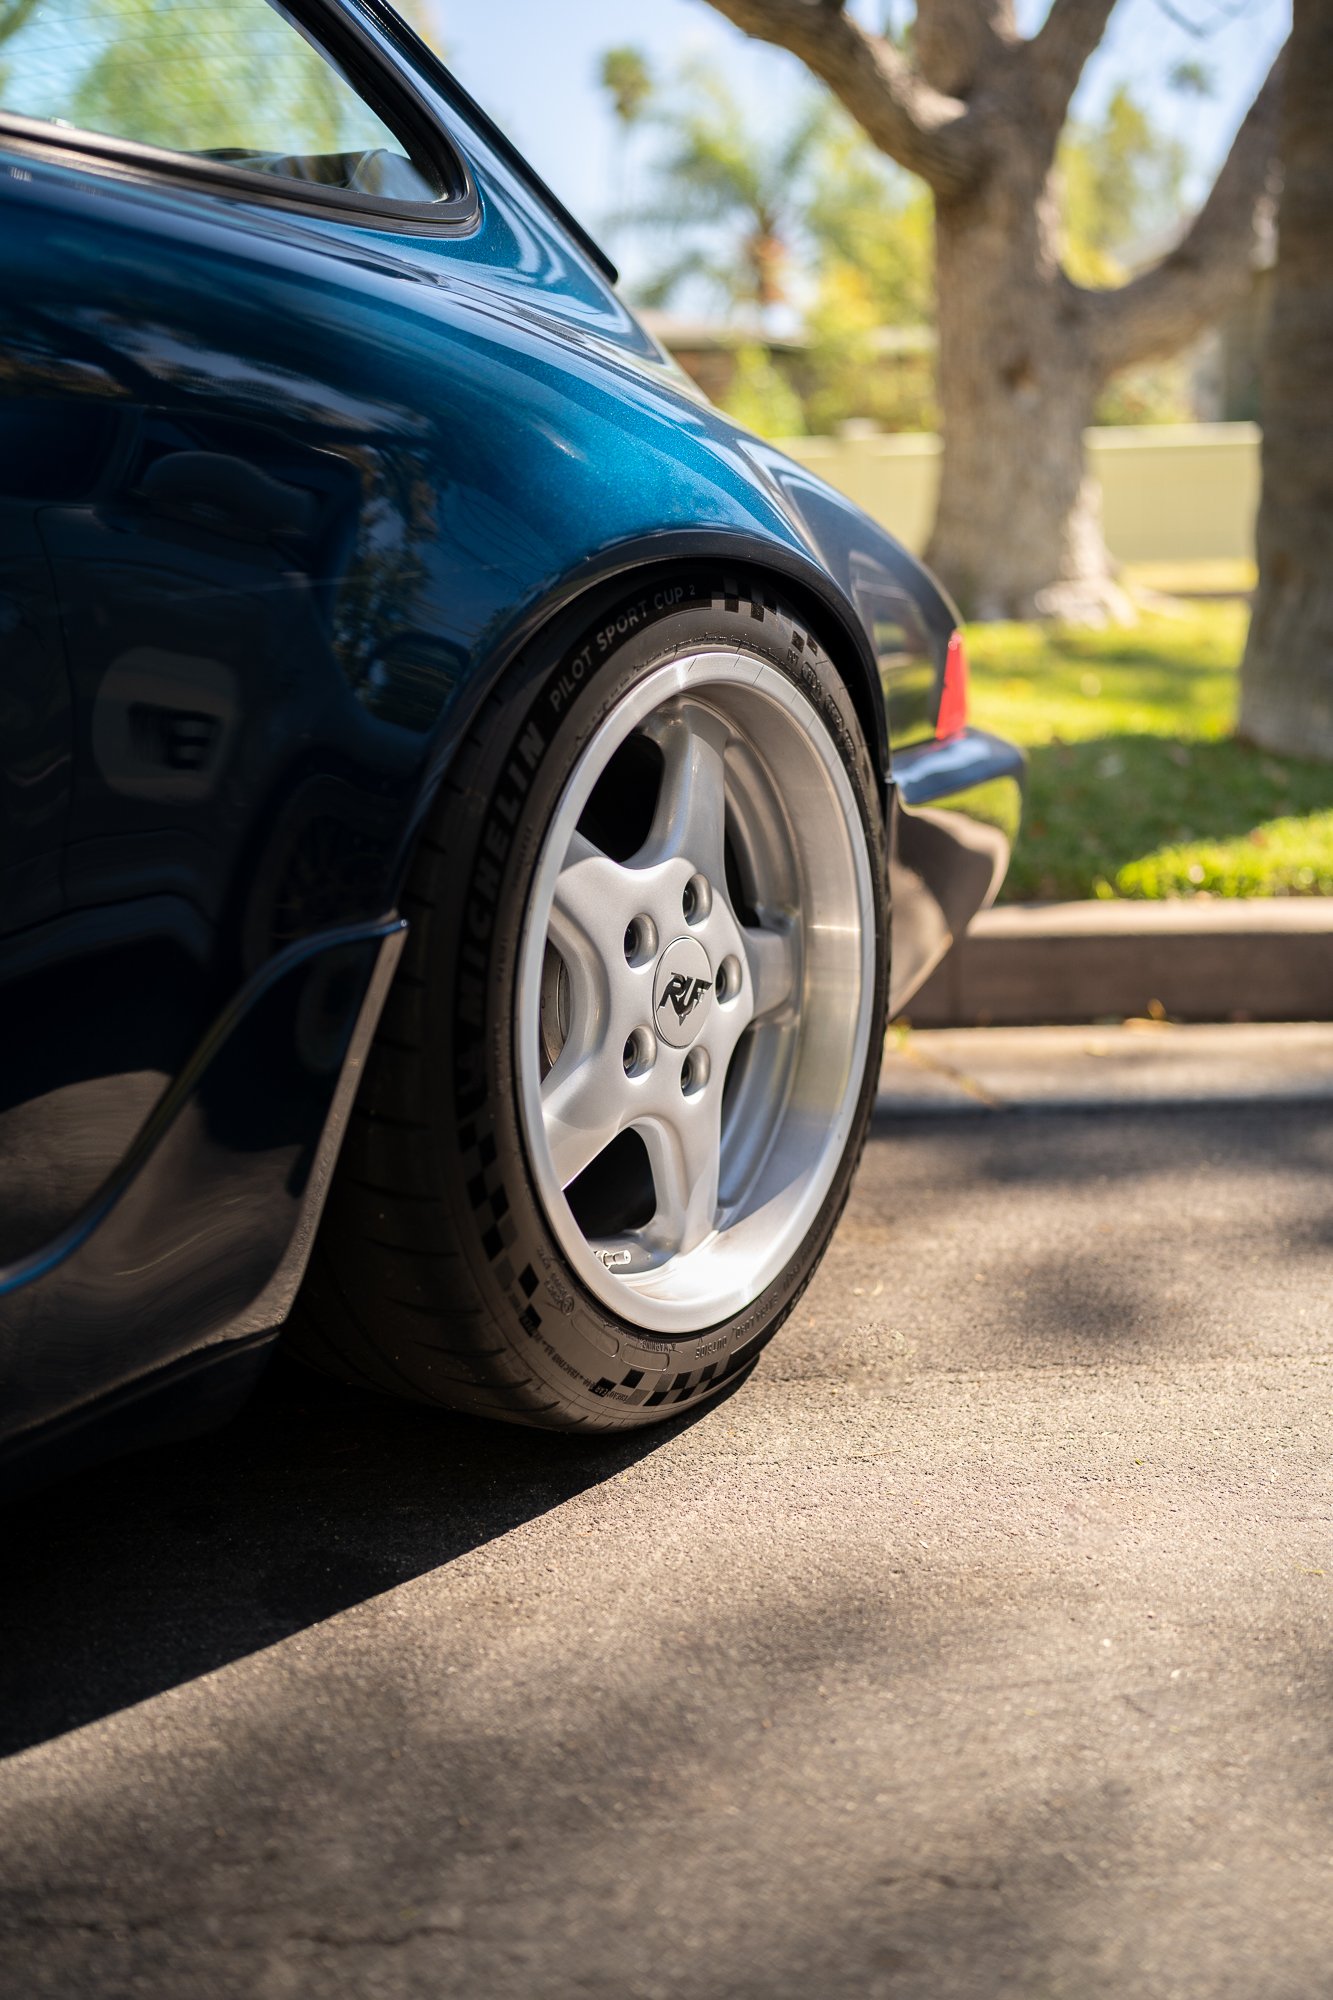 Ruf wheels on a blue Porsche